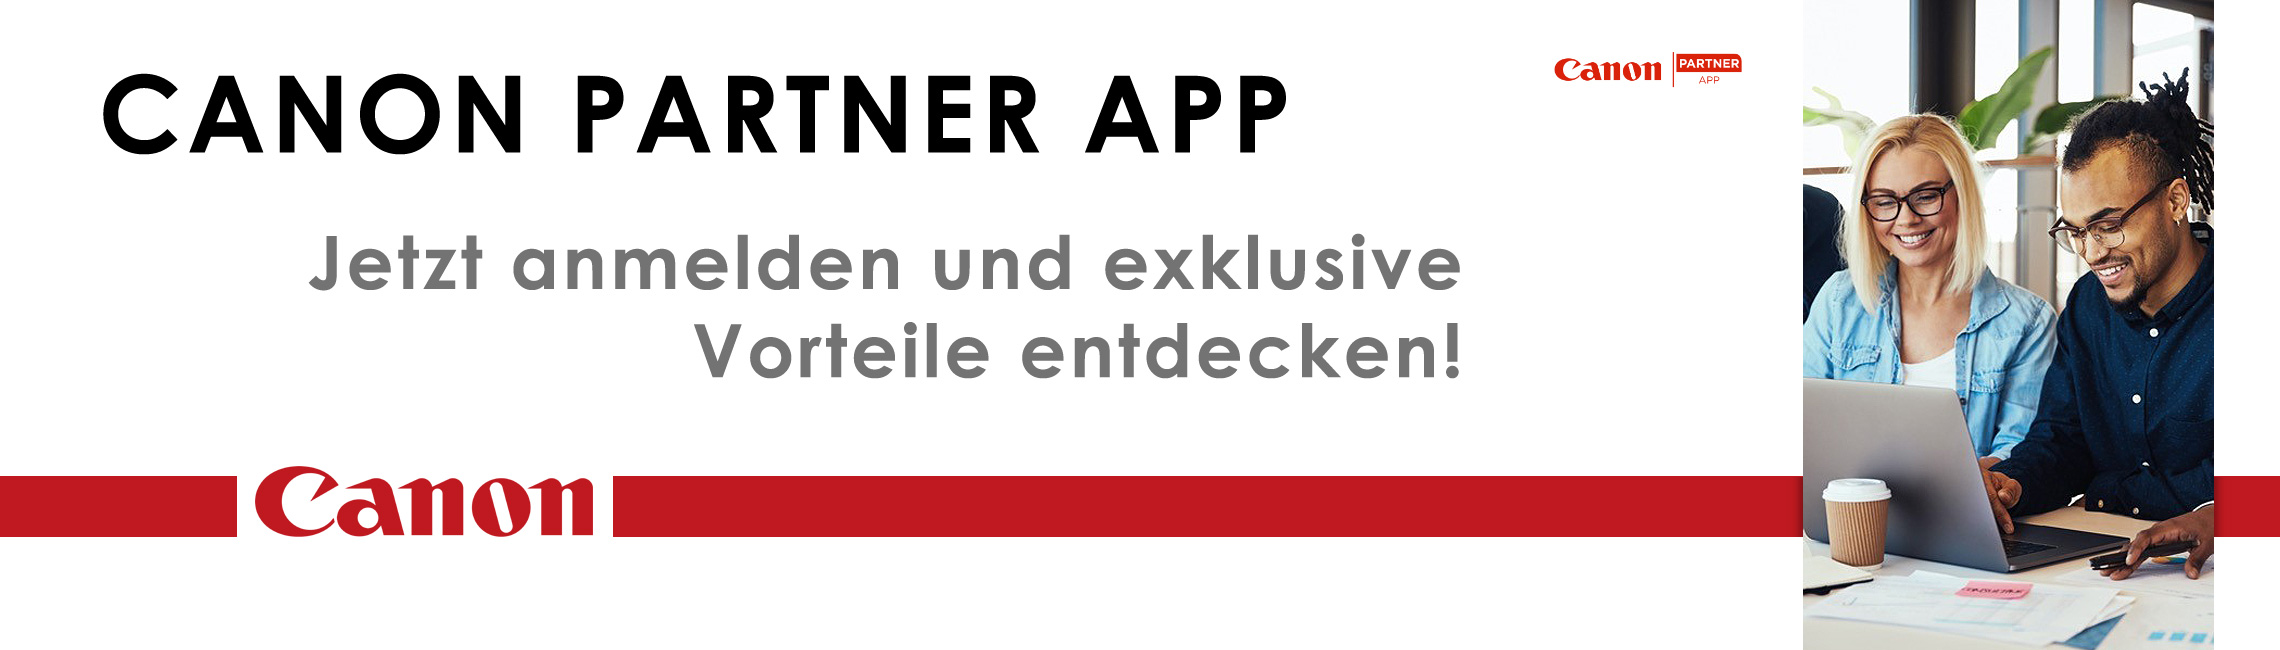 slider_canon_partner_app.jpg